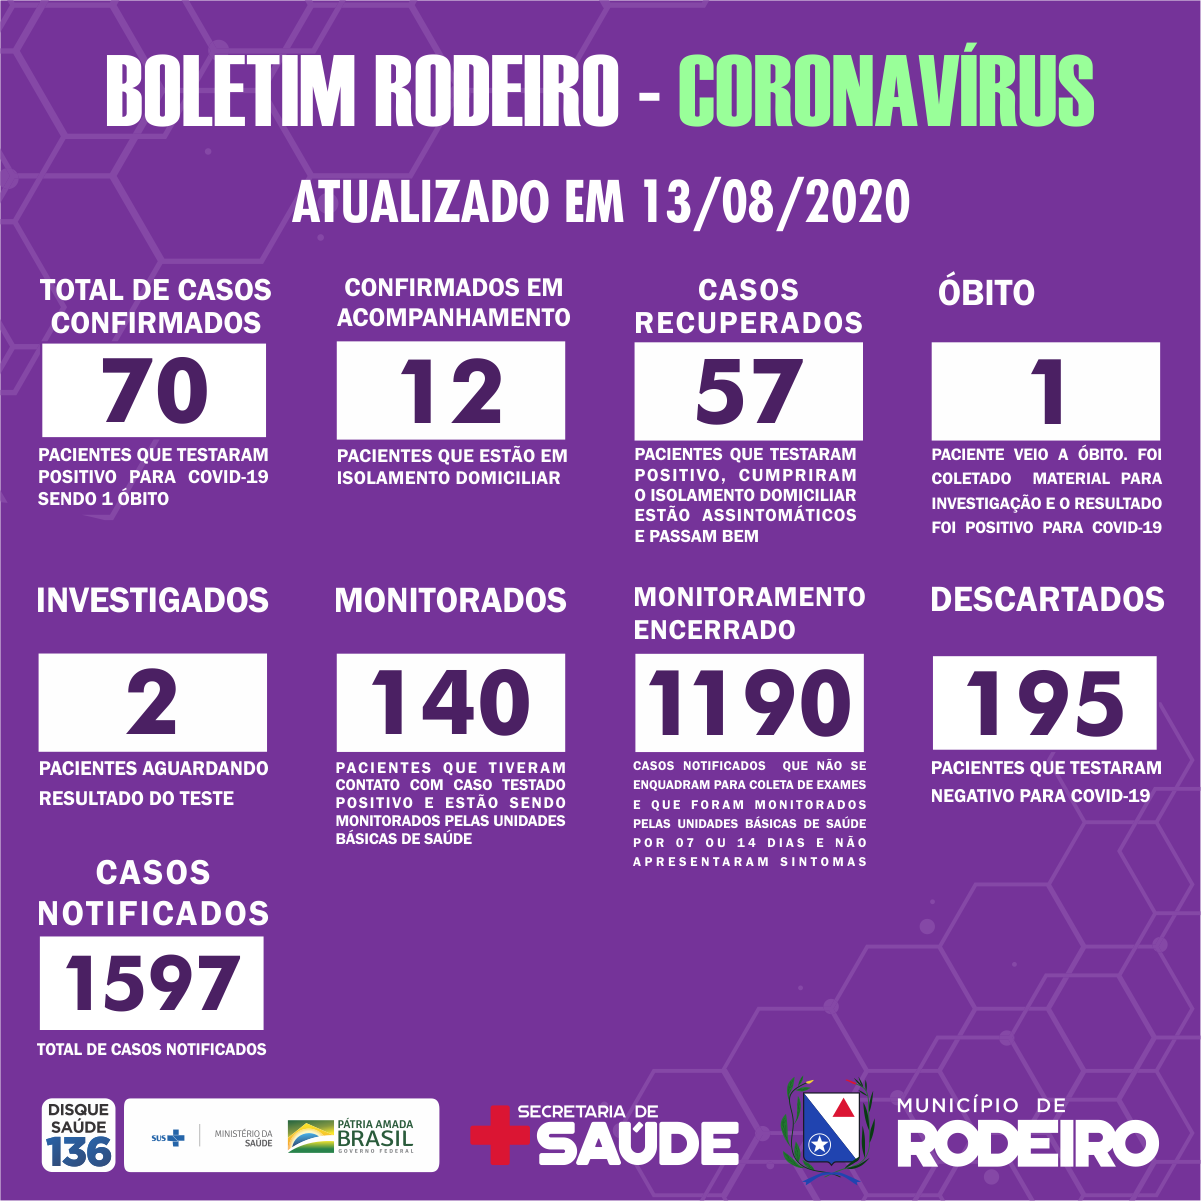 Boletim Epidemiológico do Município de Rodeiro sobre coronavírus, atualizado em 13/08/2020